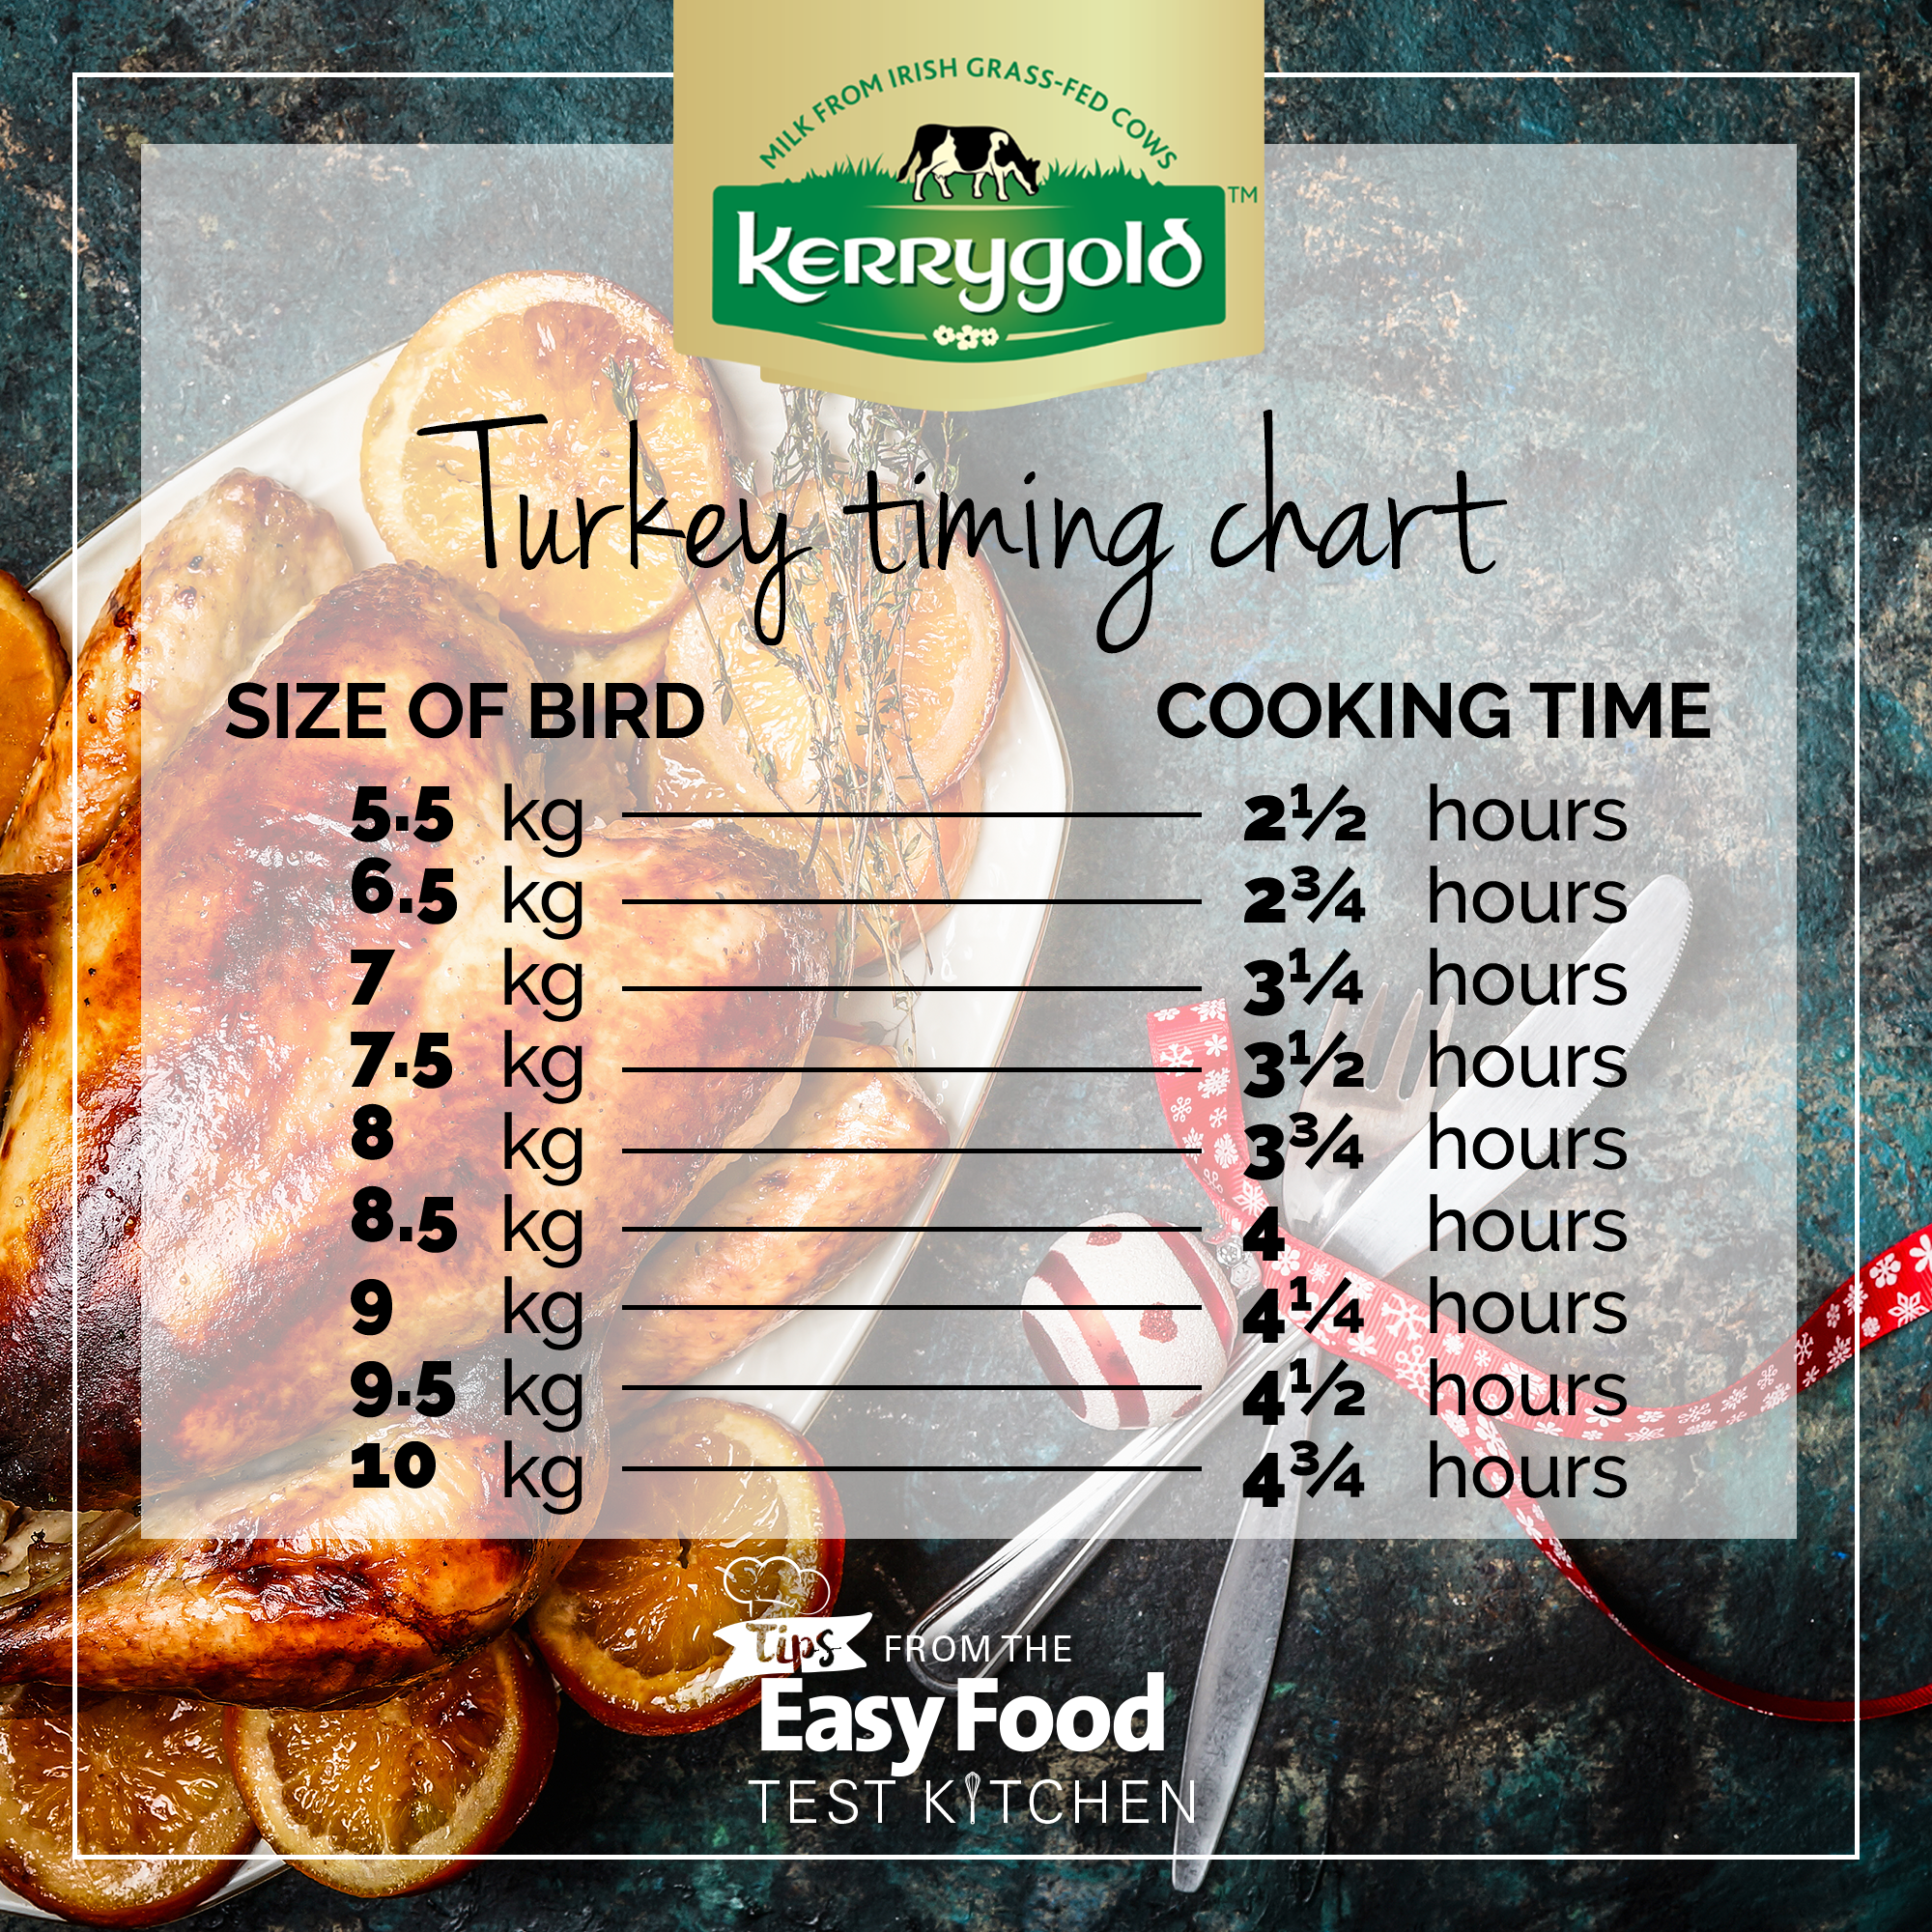 Turkey timing chart